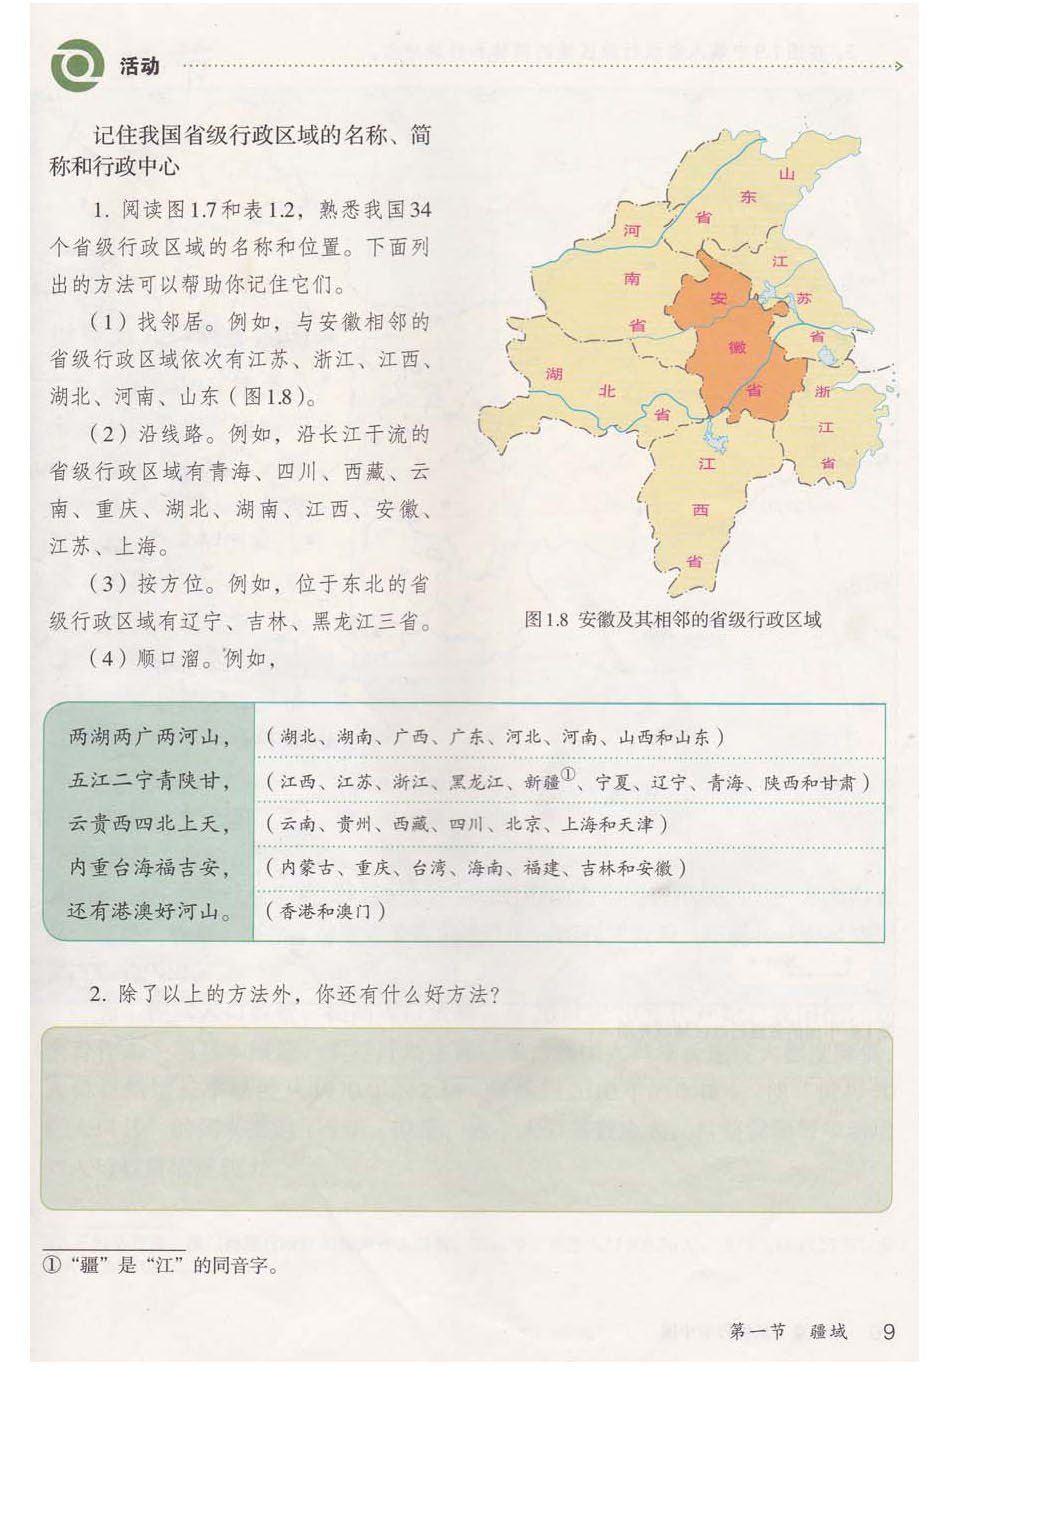 中国34个省级行政单位的名称、简称和行政中心